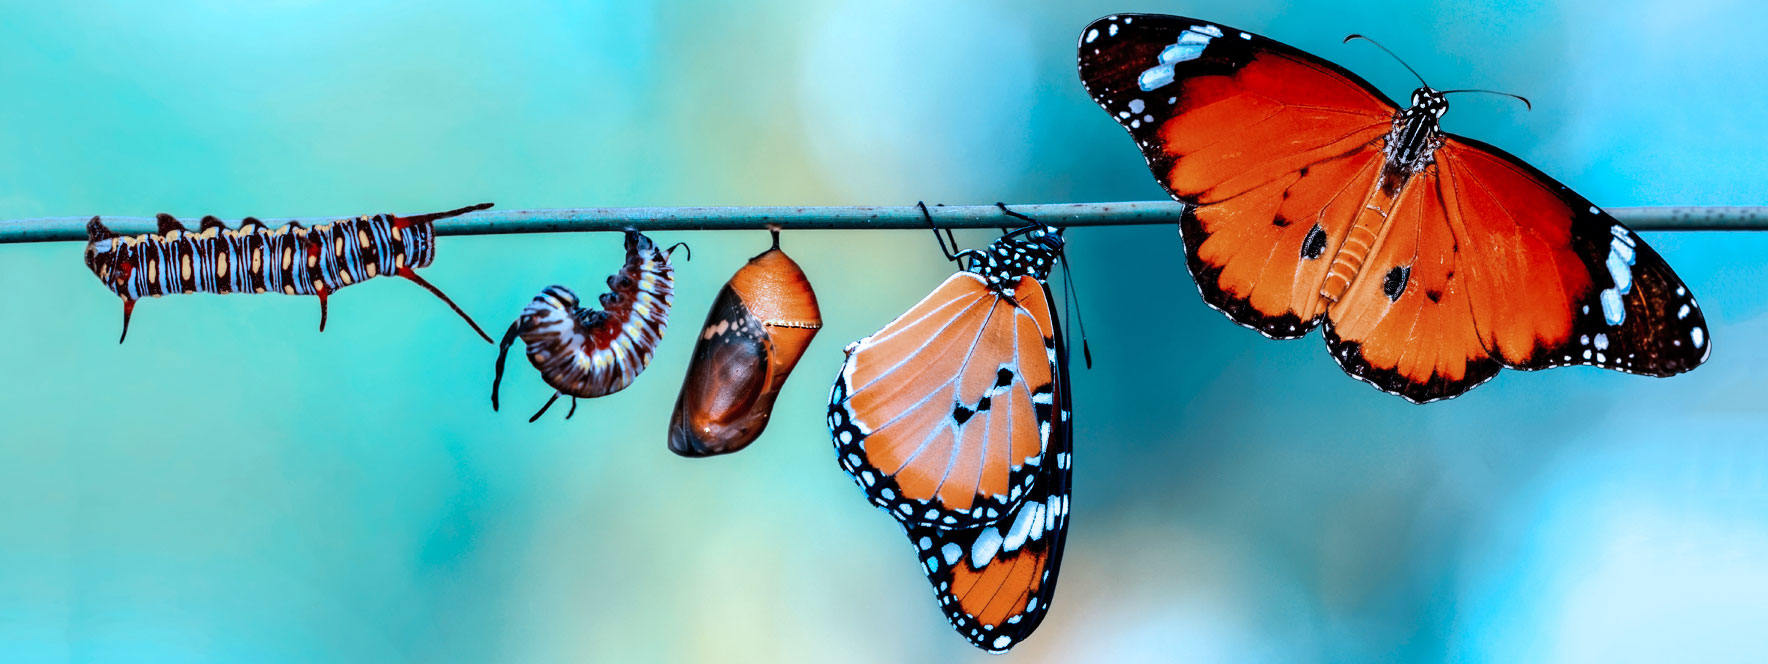 Transformation de la chenille au papillon illustre l’accueil du changement